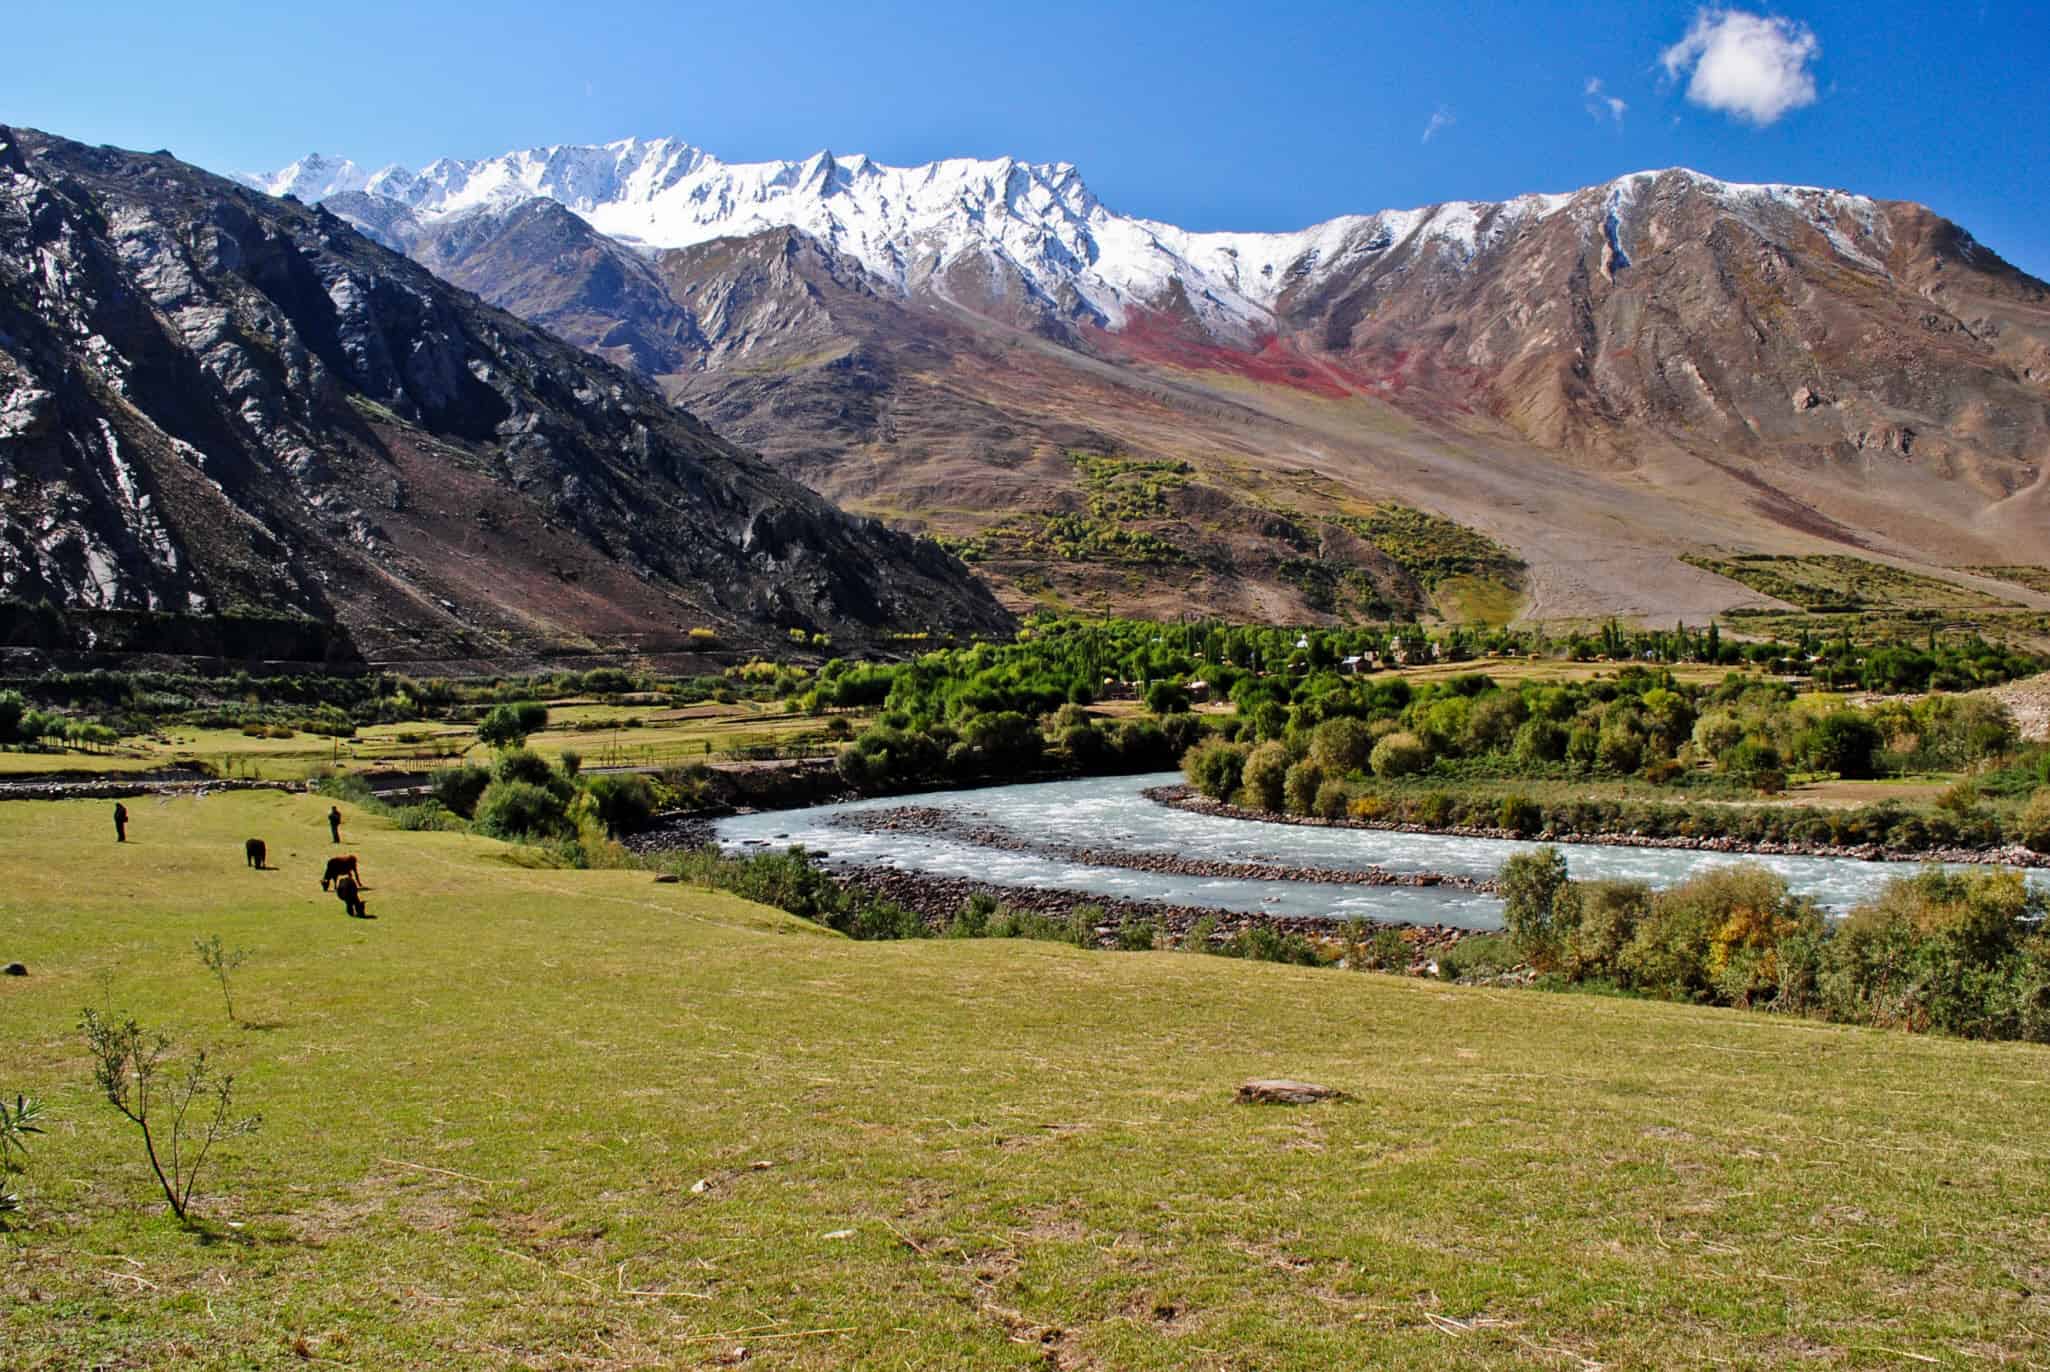 zanskar valley tour itinerary